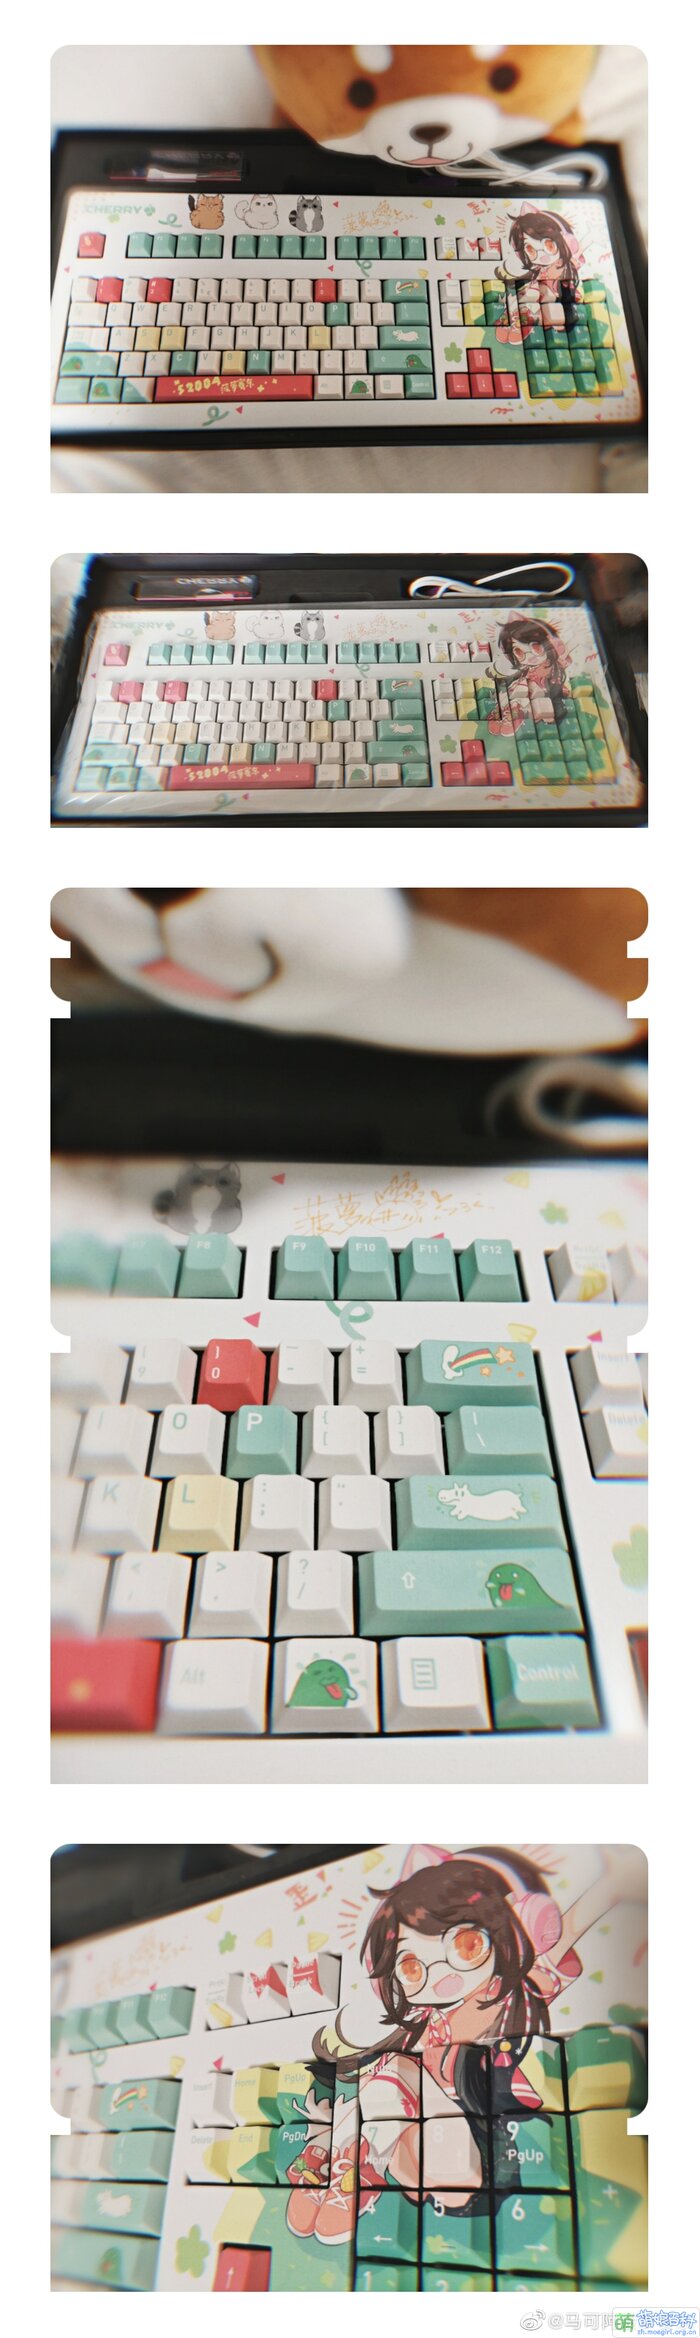 菠萝赛东键盘1.jpg